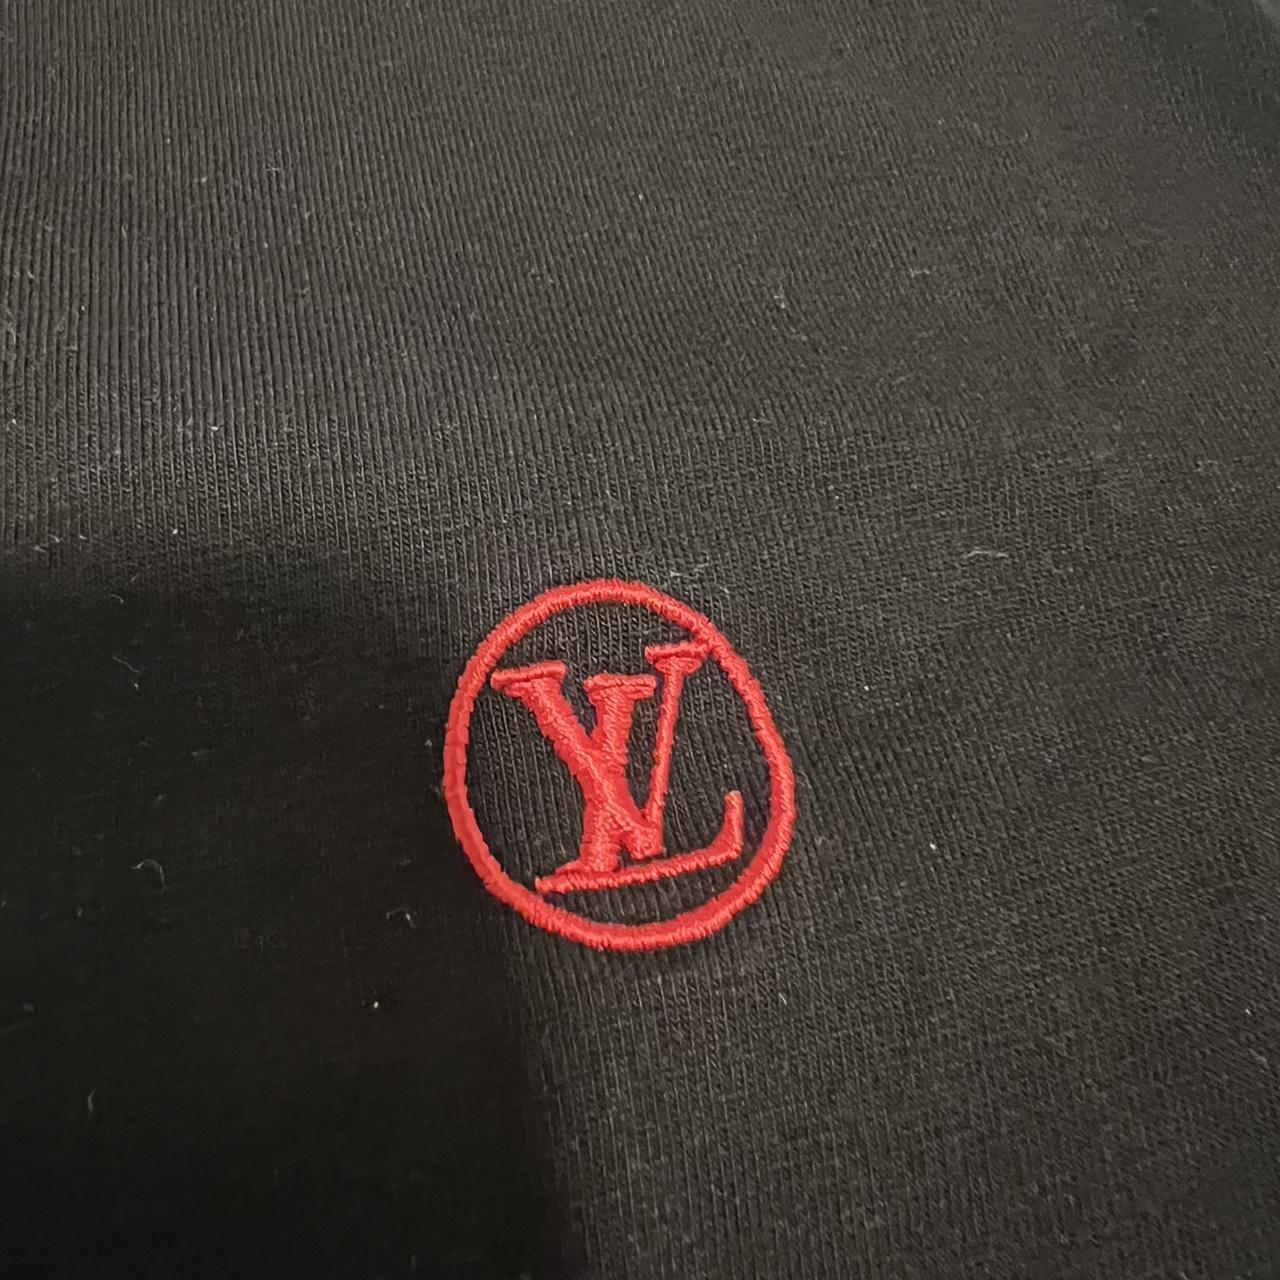 Louis Vuitton shirt ❌SOLD❌ LV summer shirt - Depop